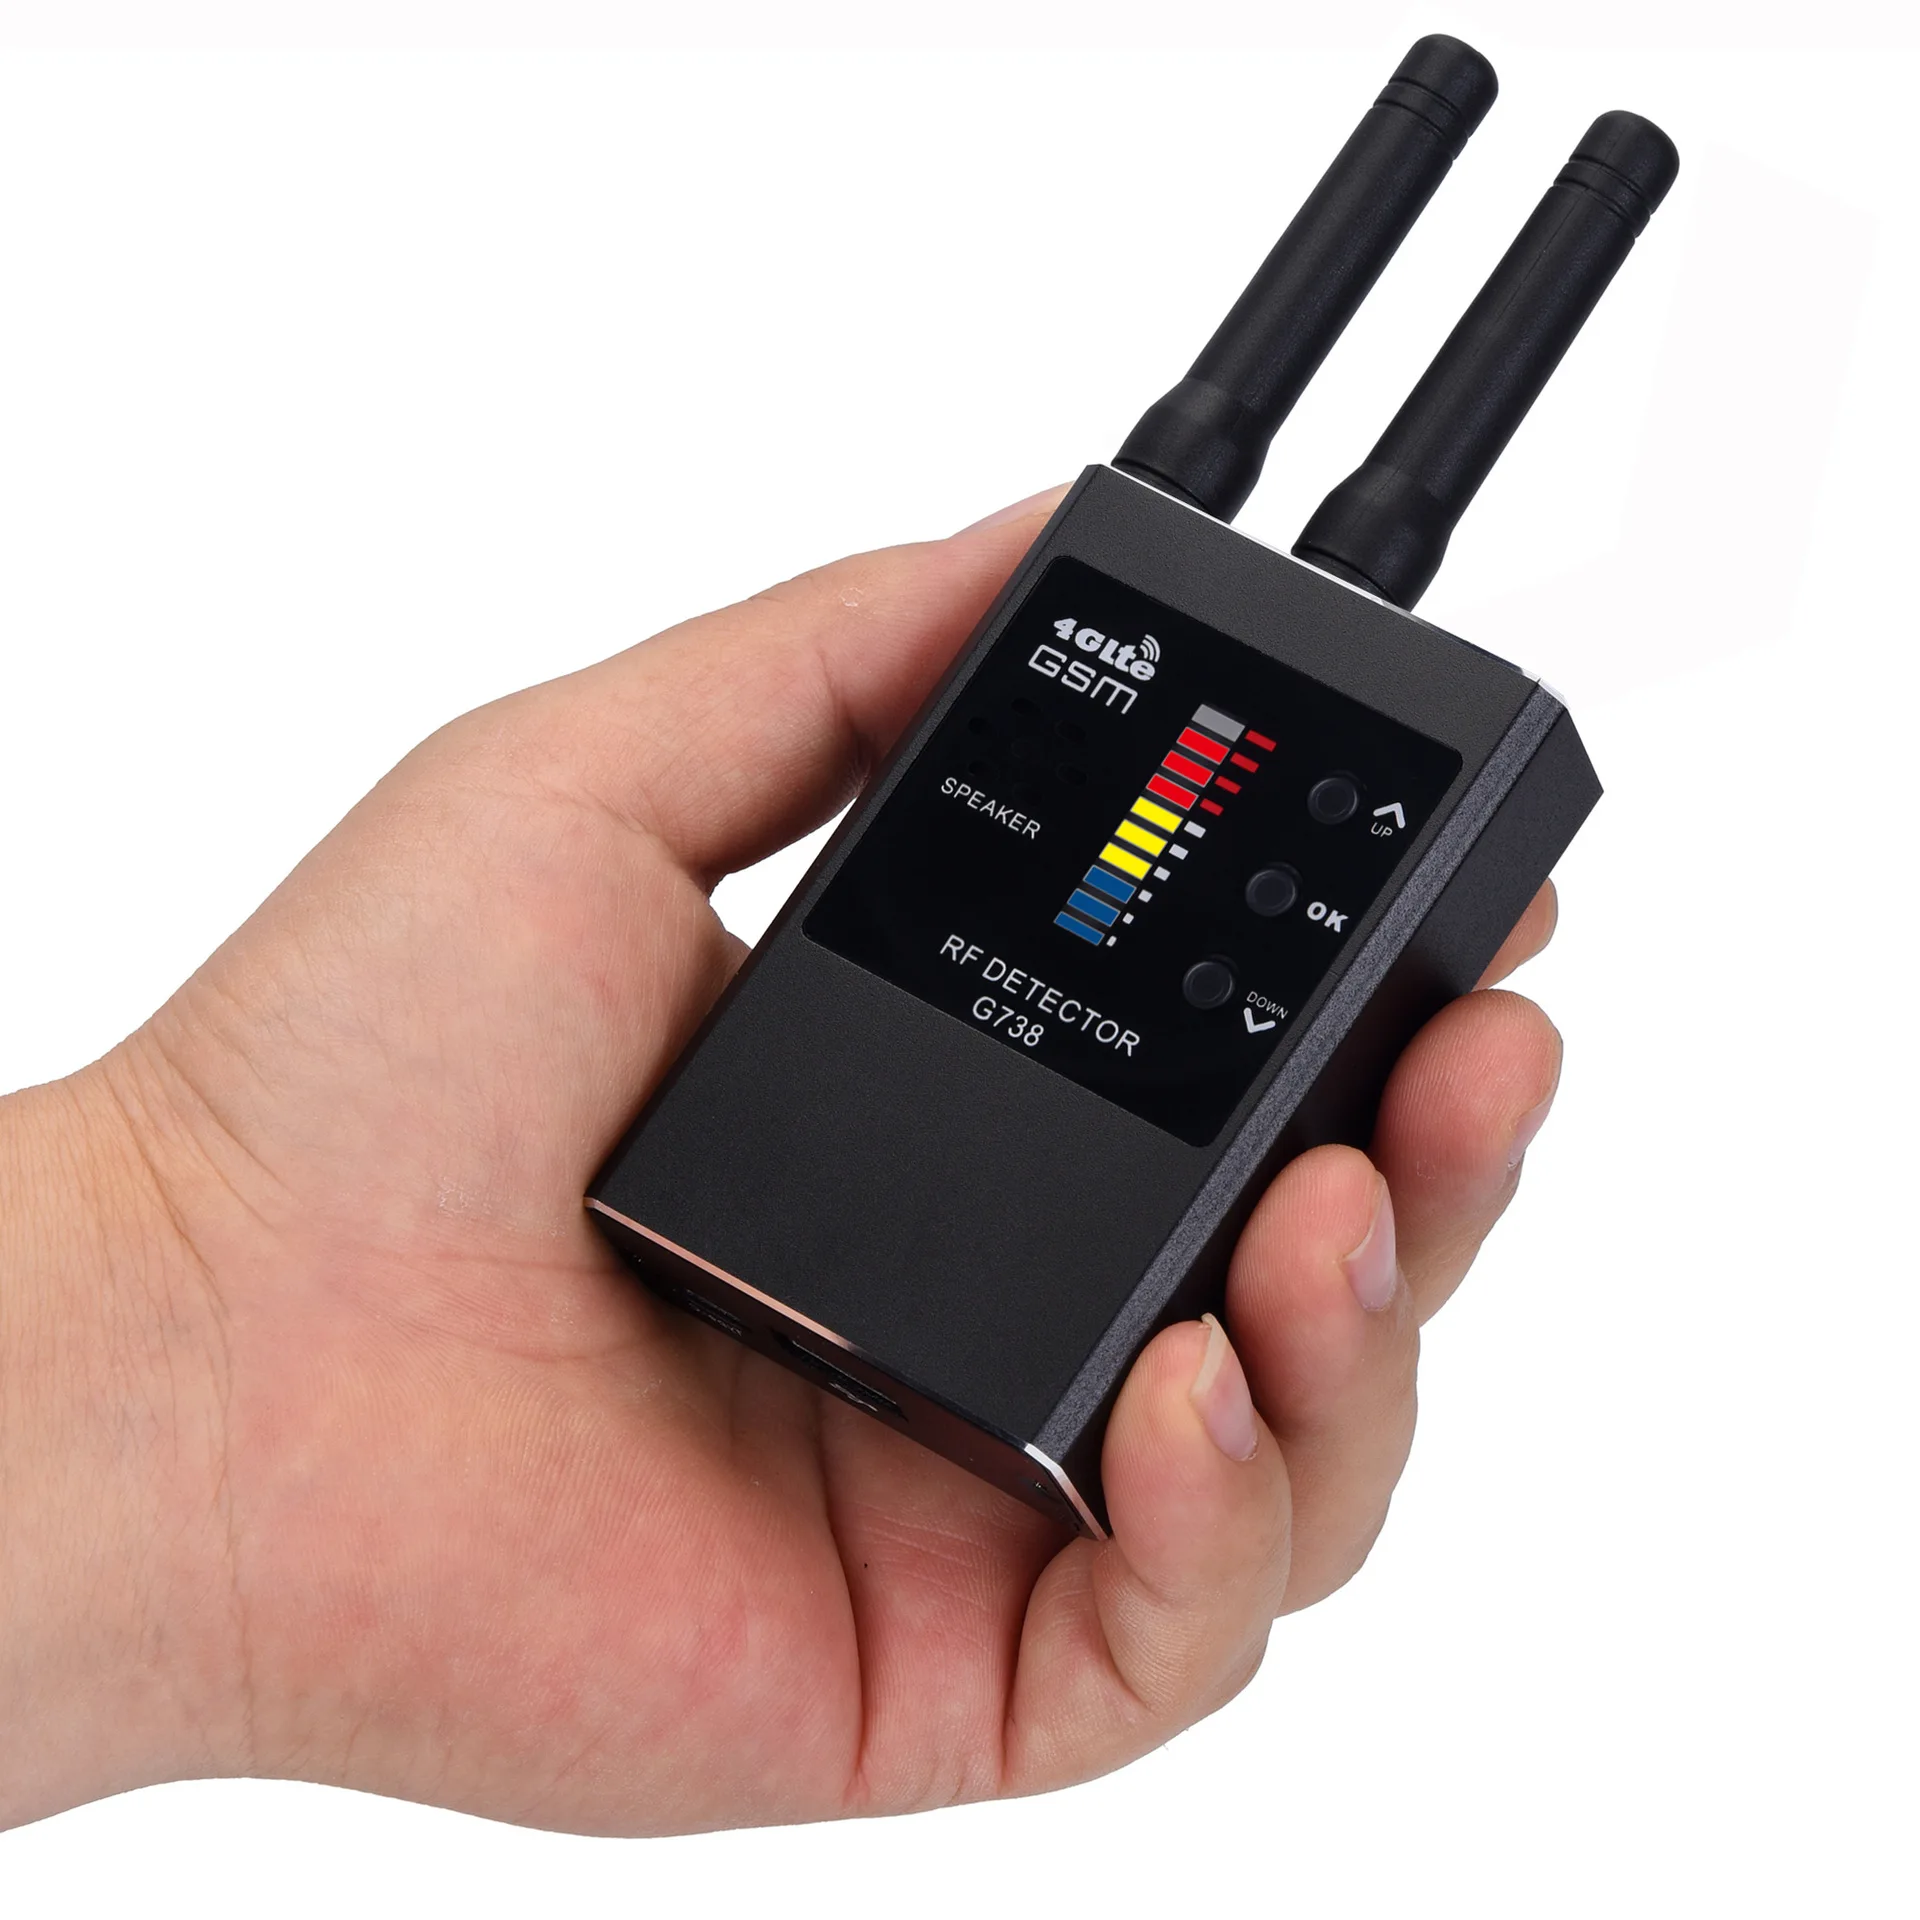 Smart Strong Magnetic Detection Hidden Device Detector G738 RF Detector Radio Spy Camera Finder GPS Tracker lnfrared Scanning enlarge